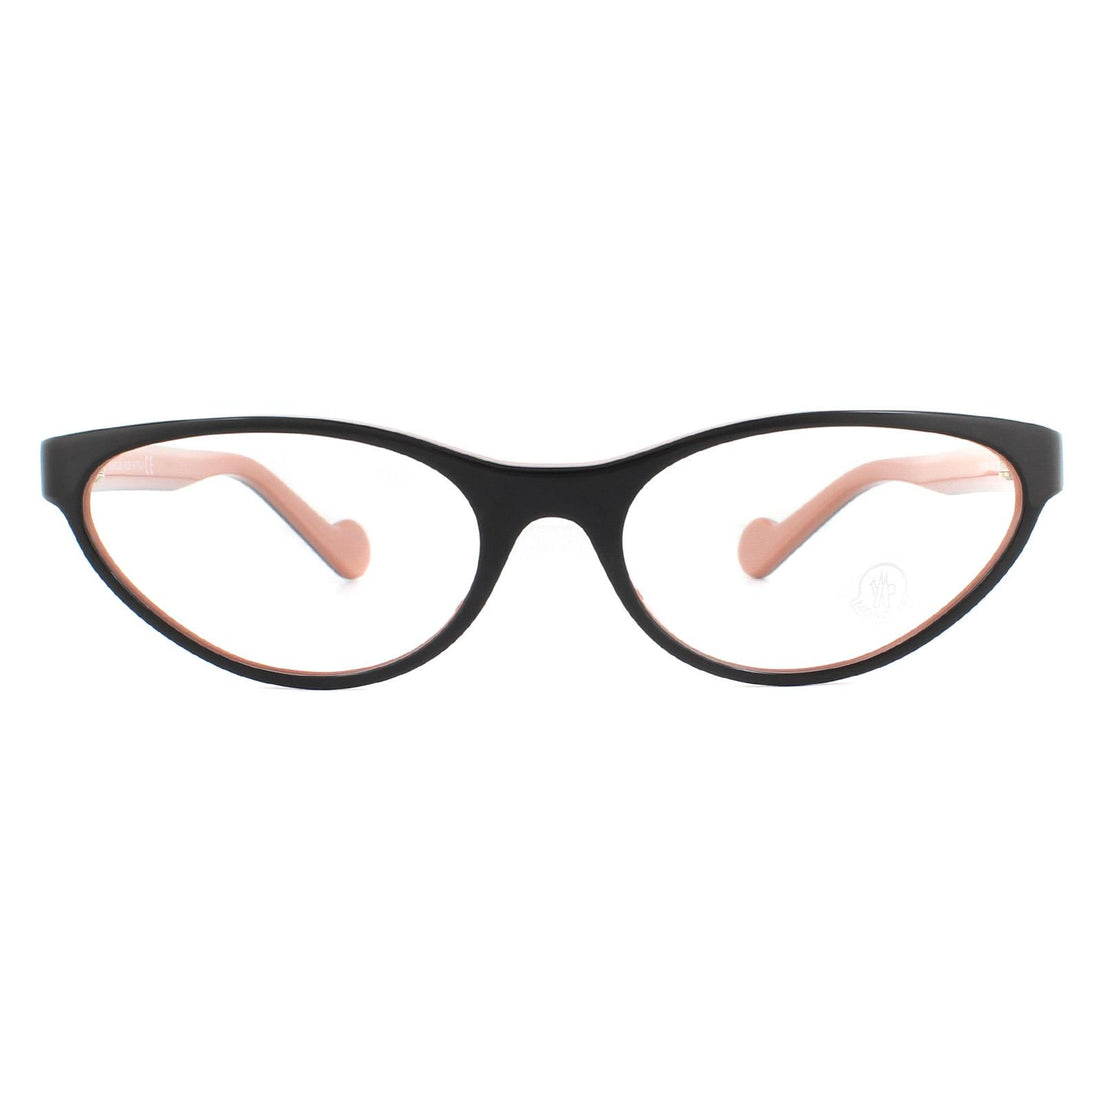 Moncler ML5064 Glasses Frames Black and Pink